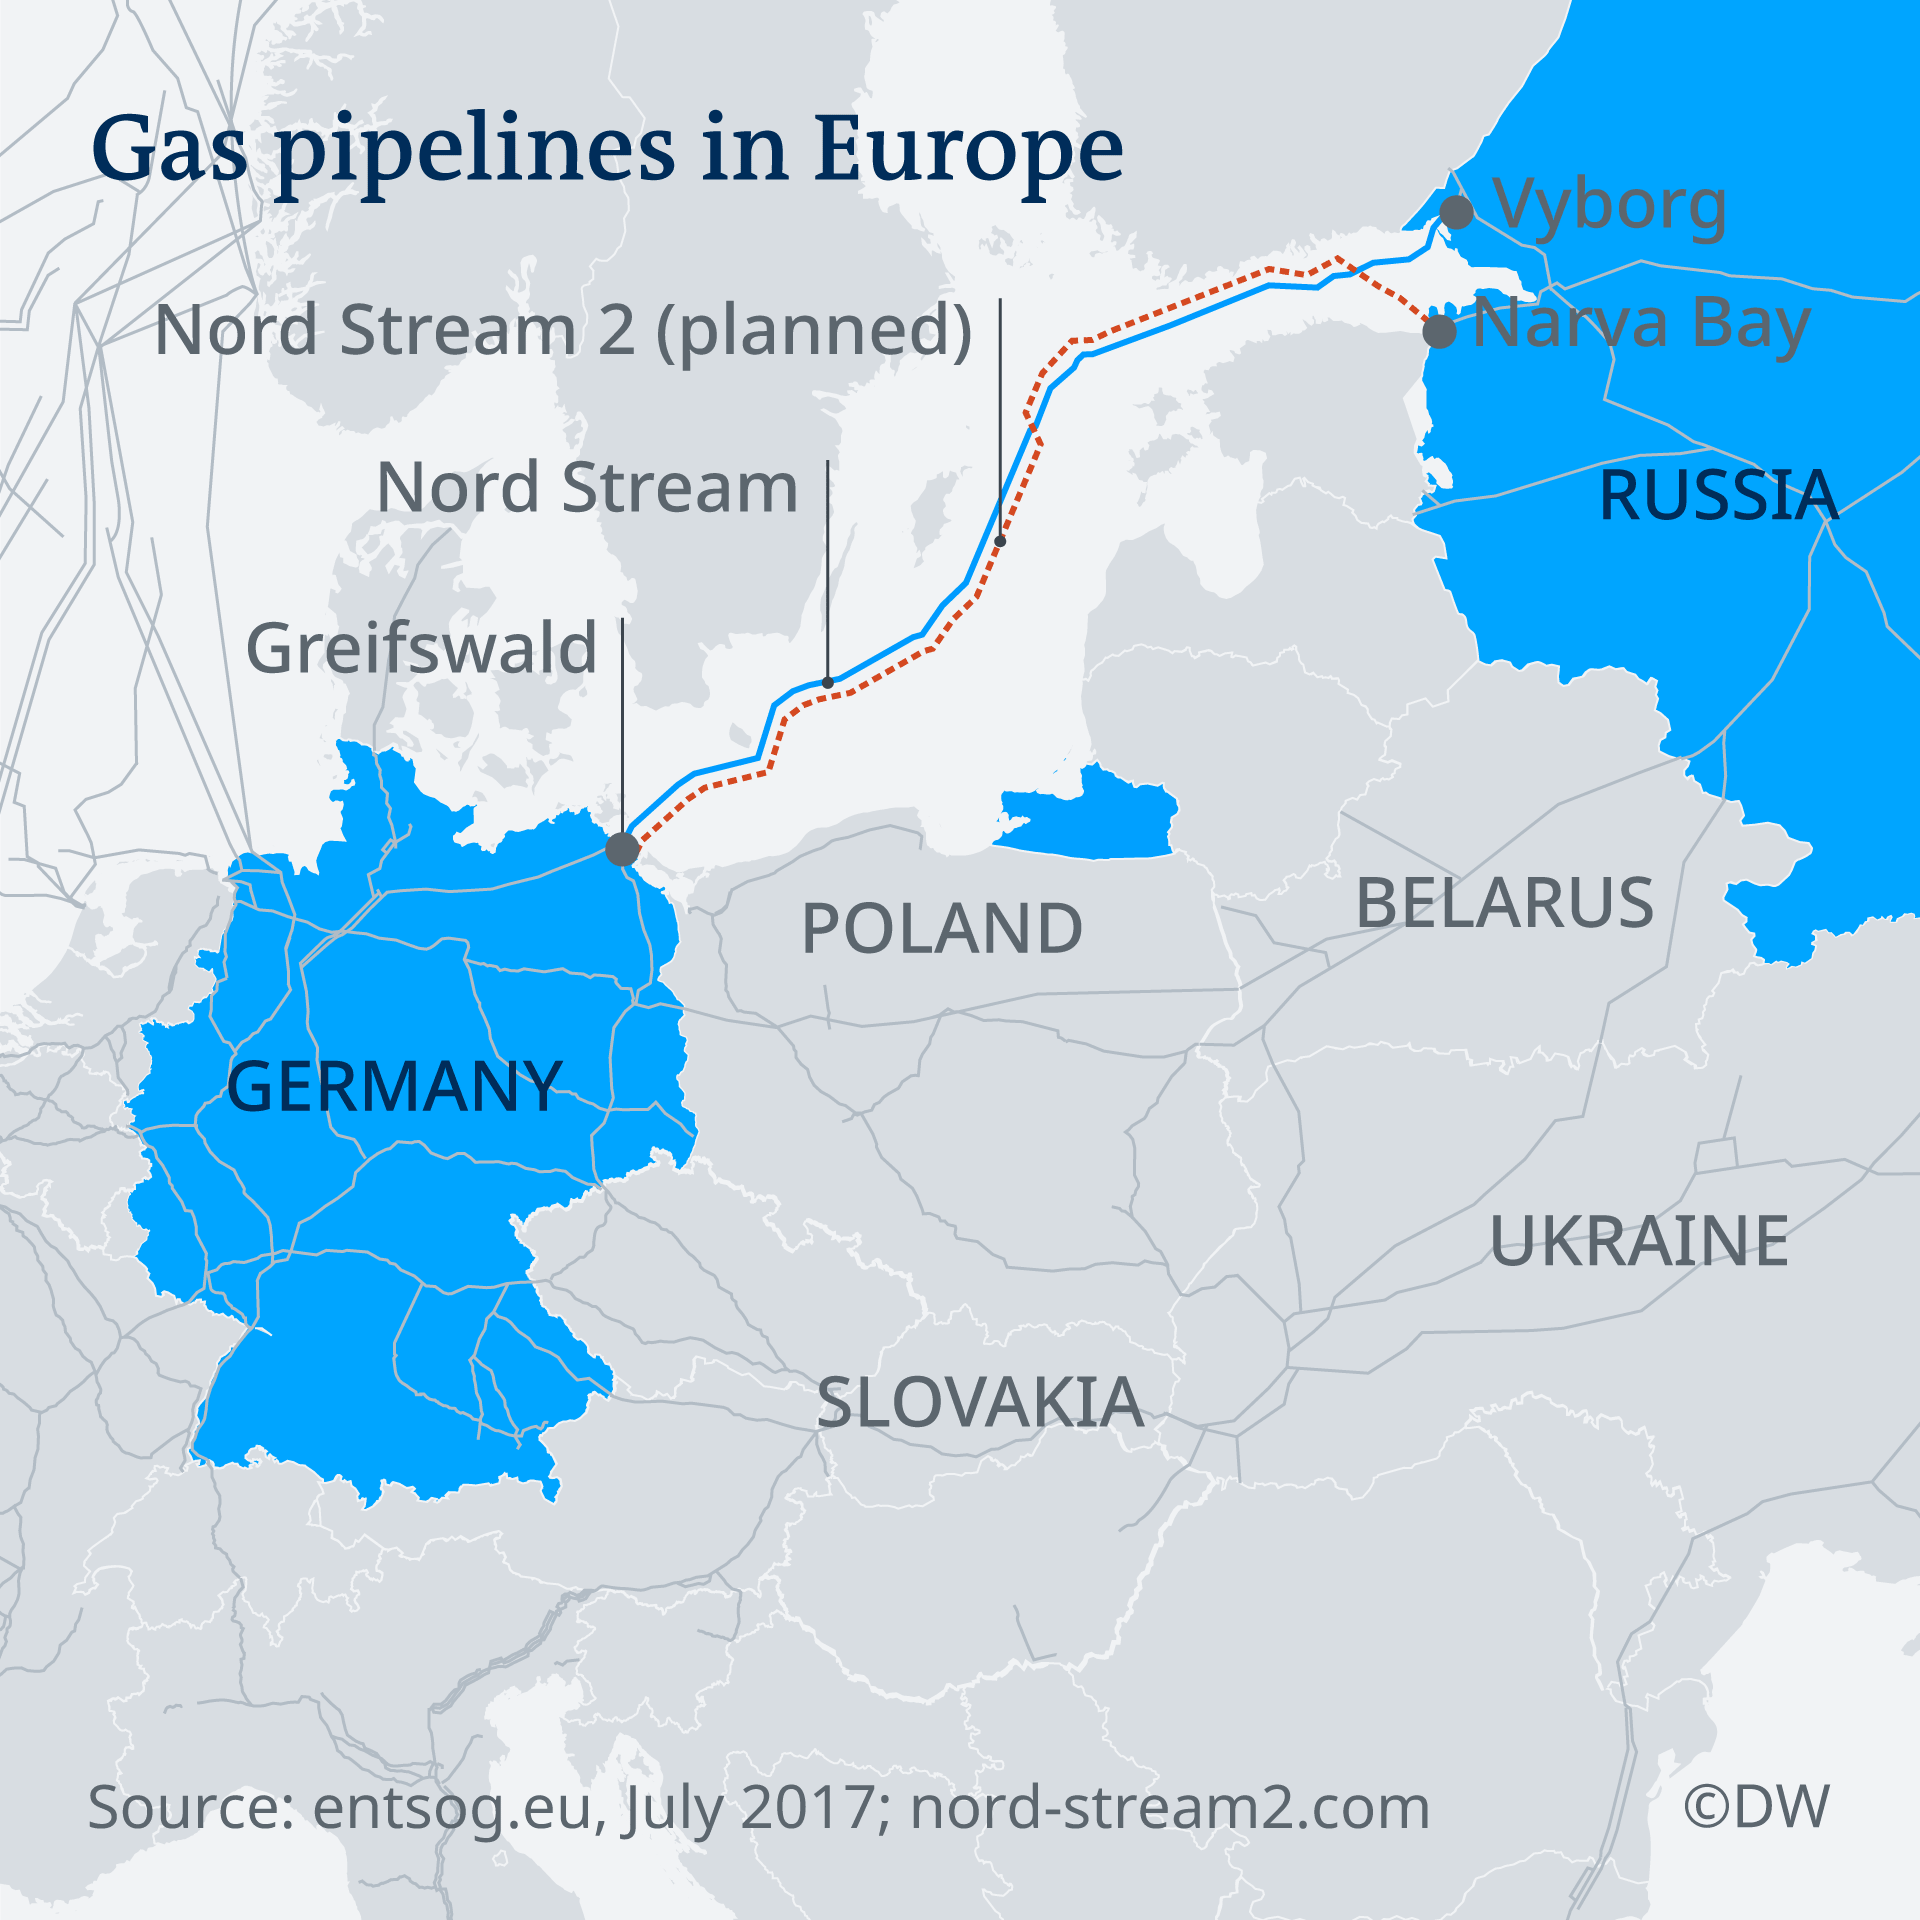  “北溪-2号”将绕开包括乌克兰在内的东欧国家，经波罗的海向德国输气 图源：德国之声